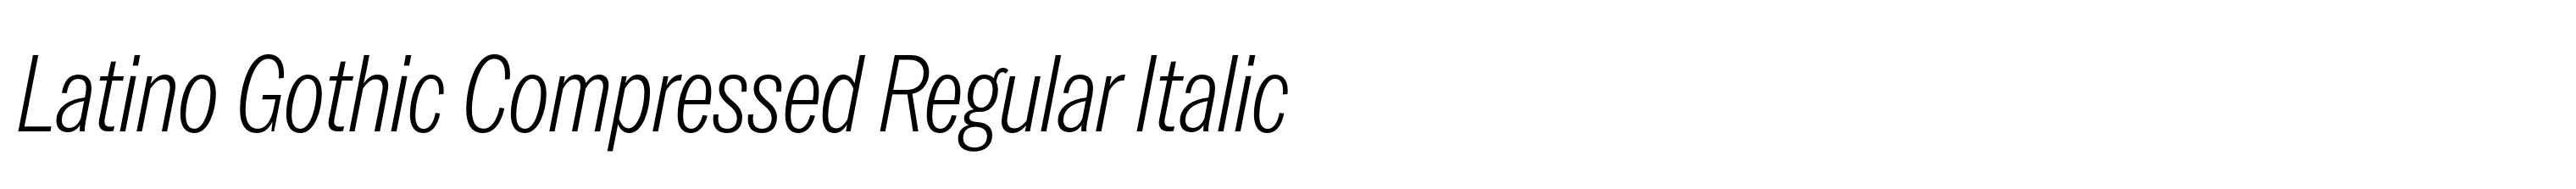 Latino Gothic Compressed Regular Italic